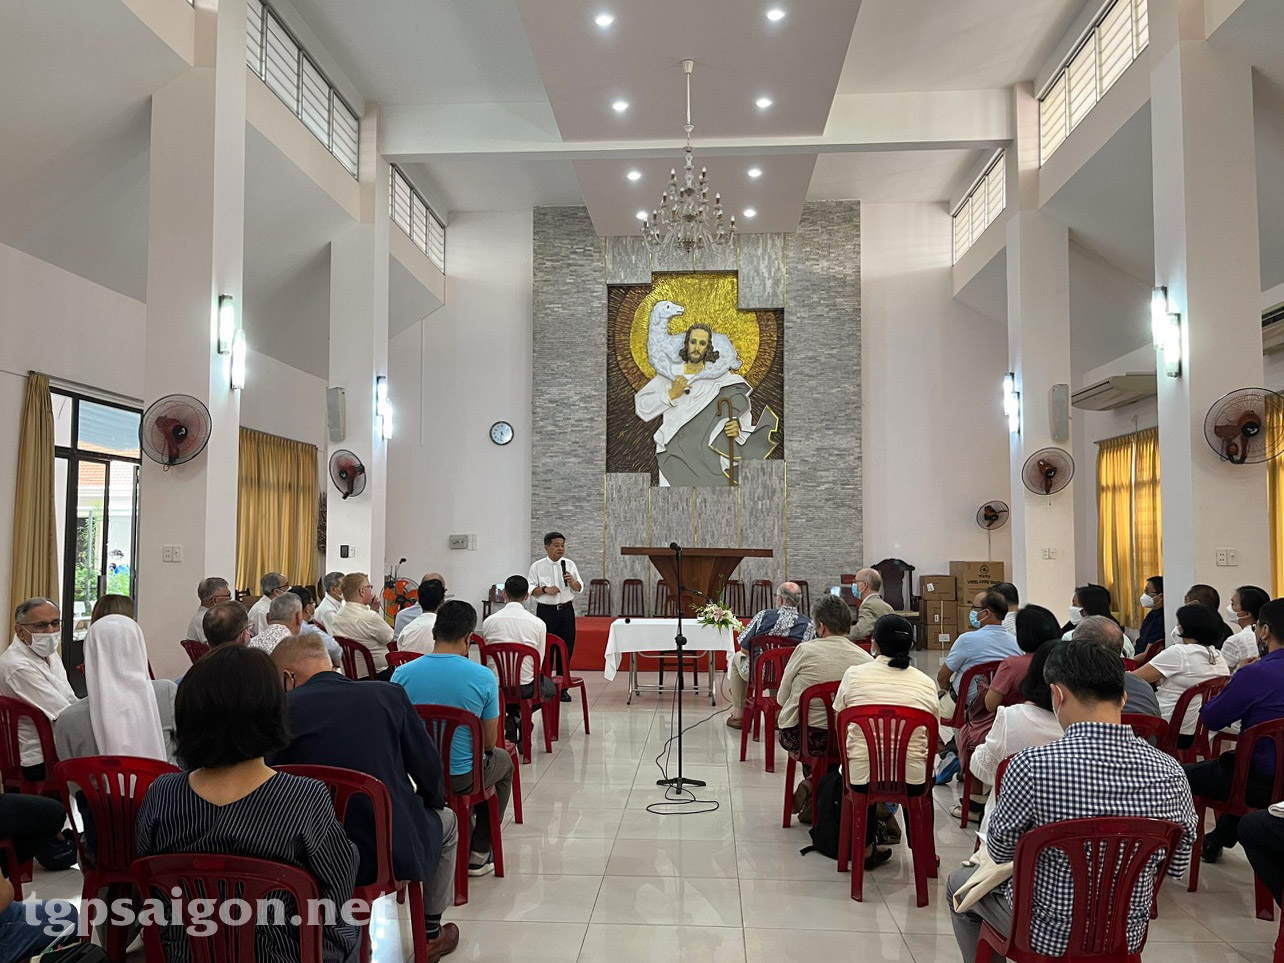 Hiệp Hành: cuộc gặp gỡ giữa các Cộng đoàn Công giáo nước ngoài tại TPHCM